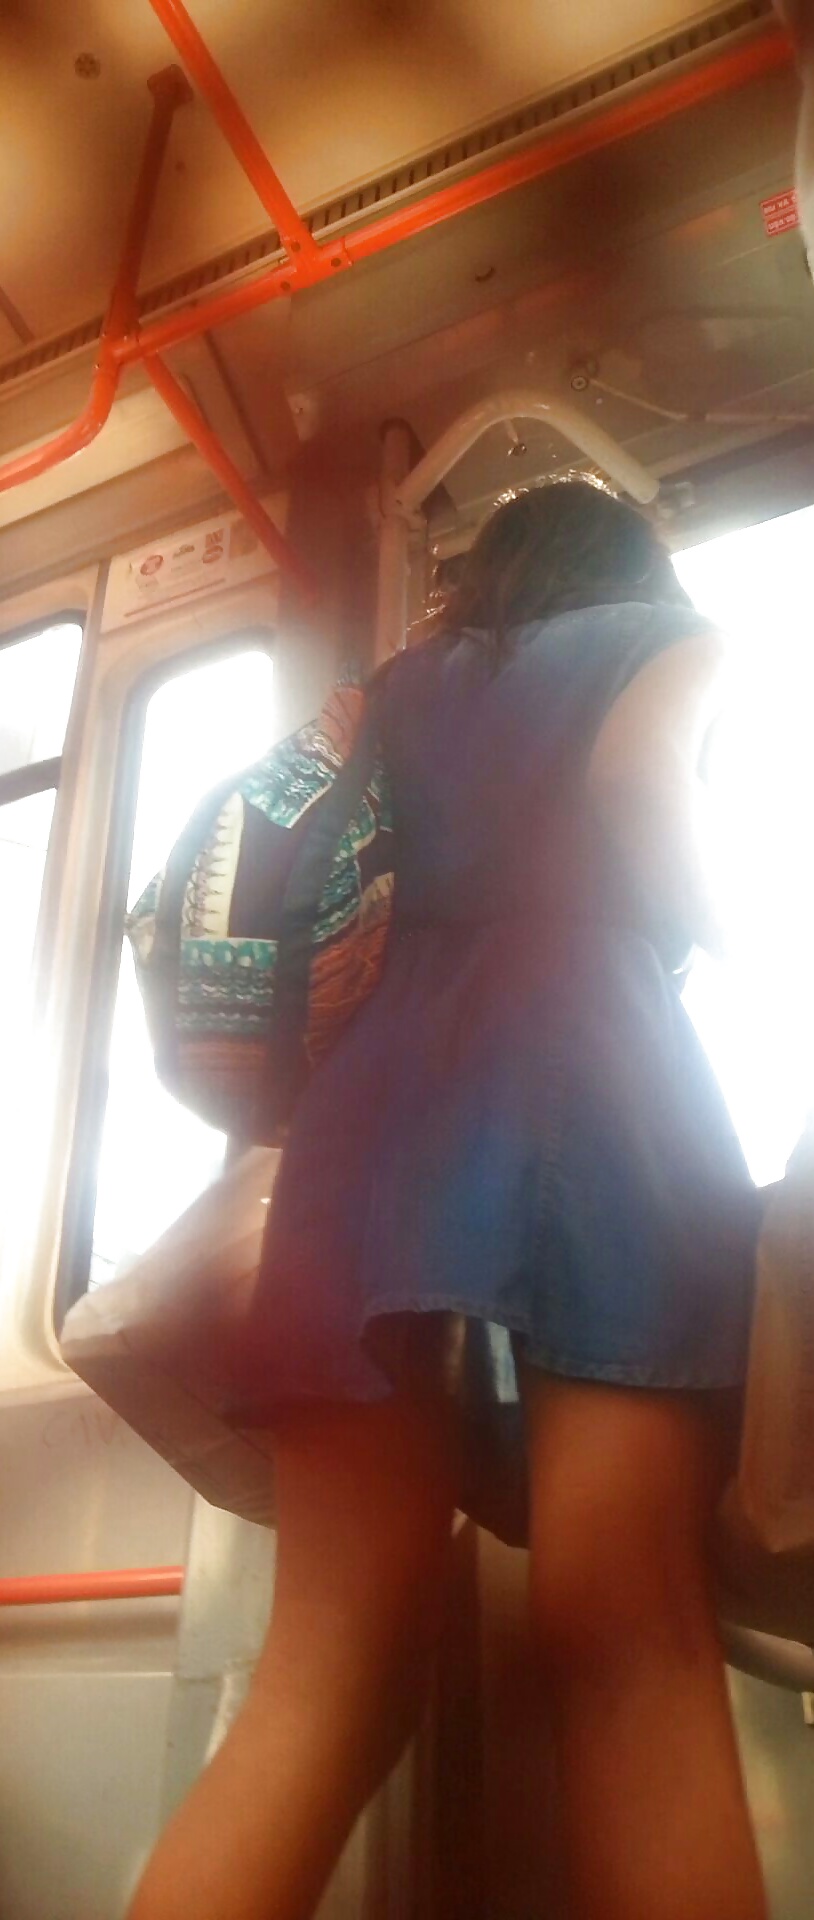 Spia vecchia + giovane in tram e bus rumeno
 #33500709